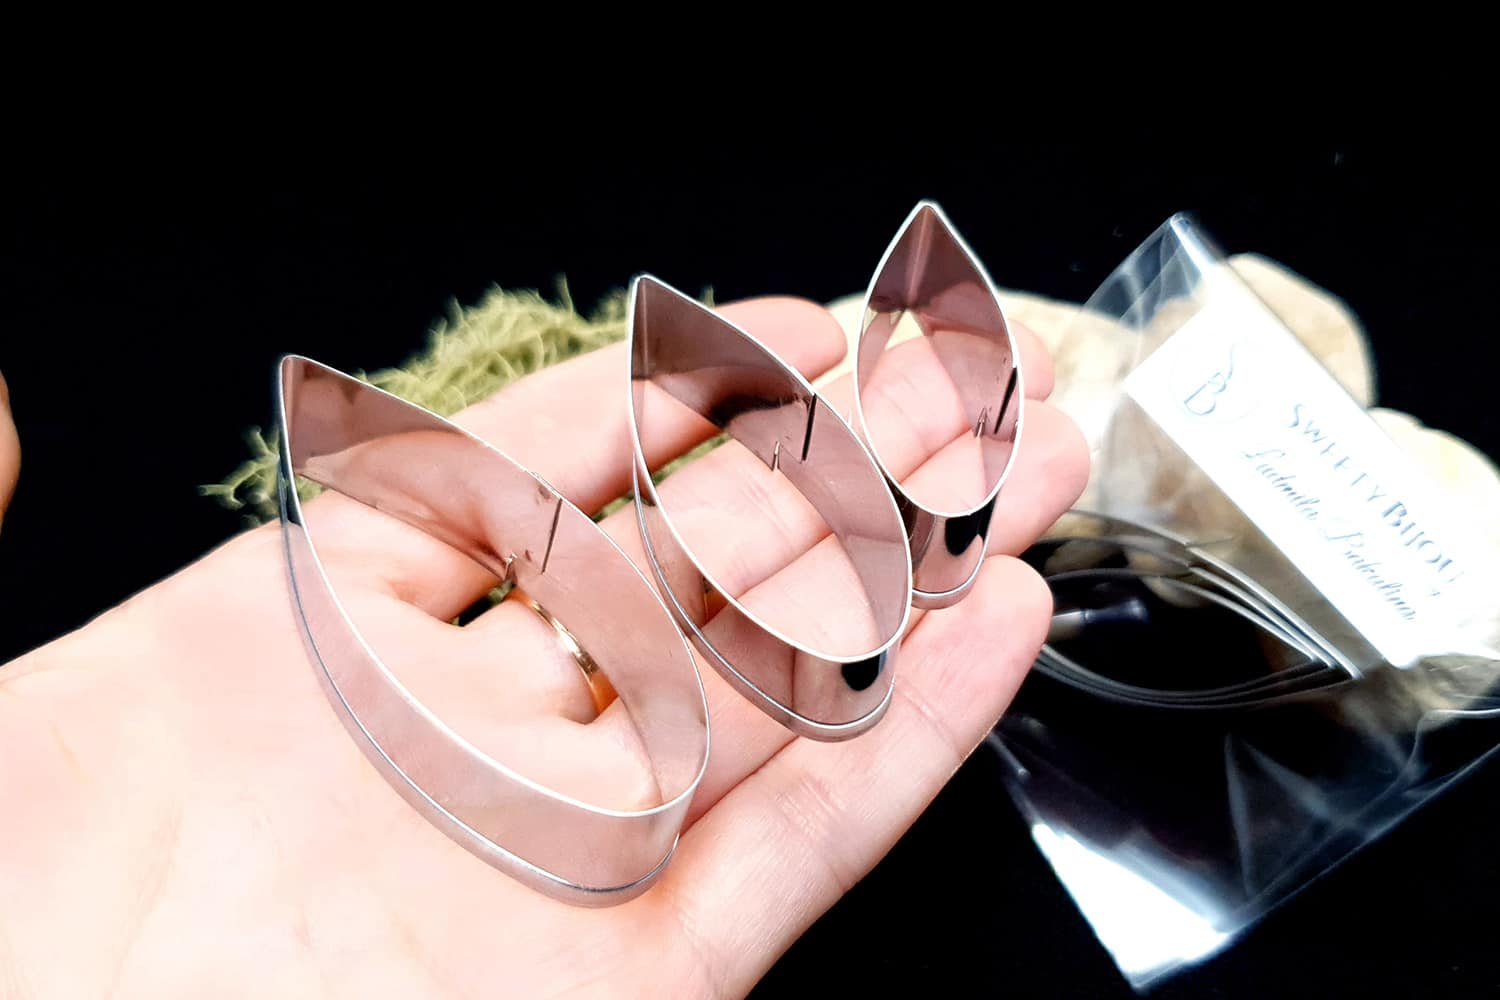 Stainless steel petal-shape cutters (22770)